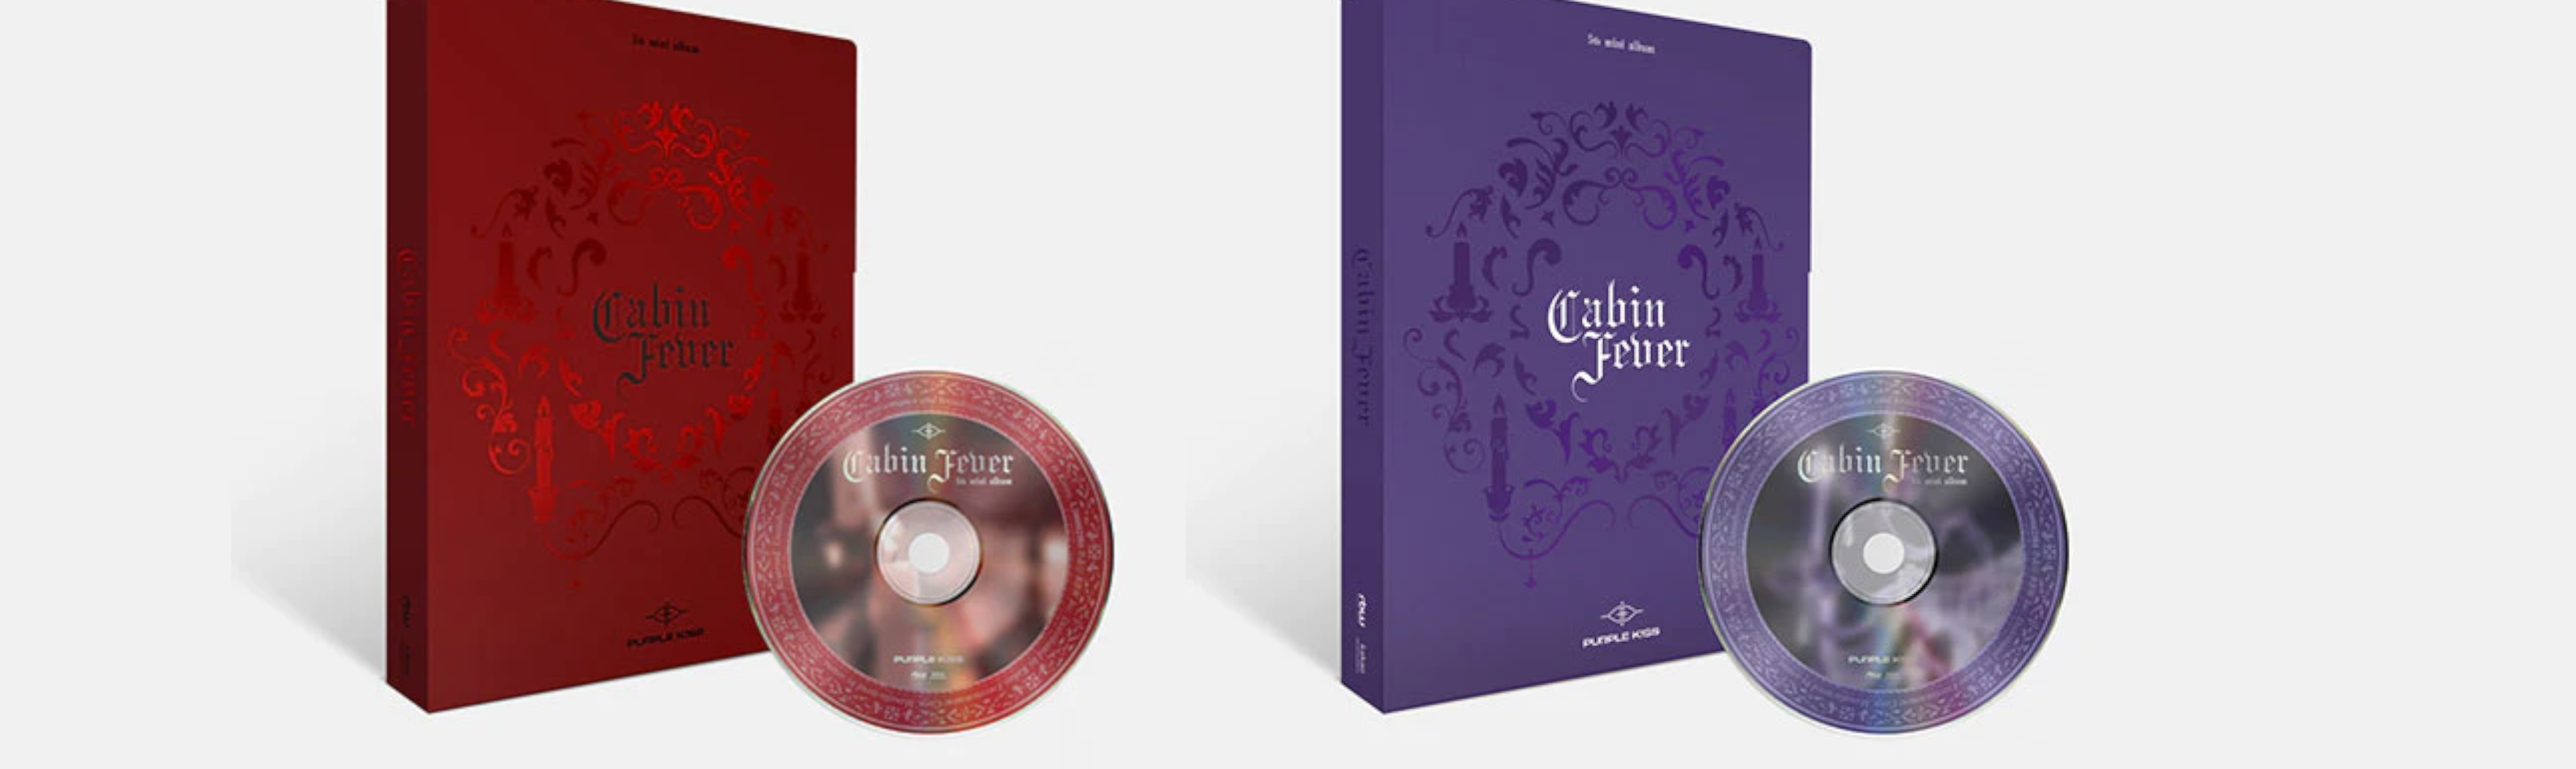 Purple Kiss Mini Album 'Cabin Fever' RED and PURPLE Version Preview